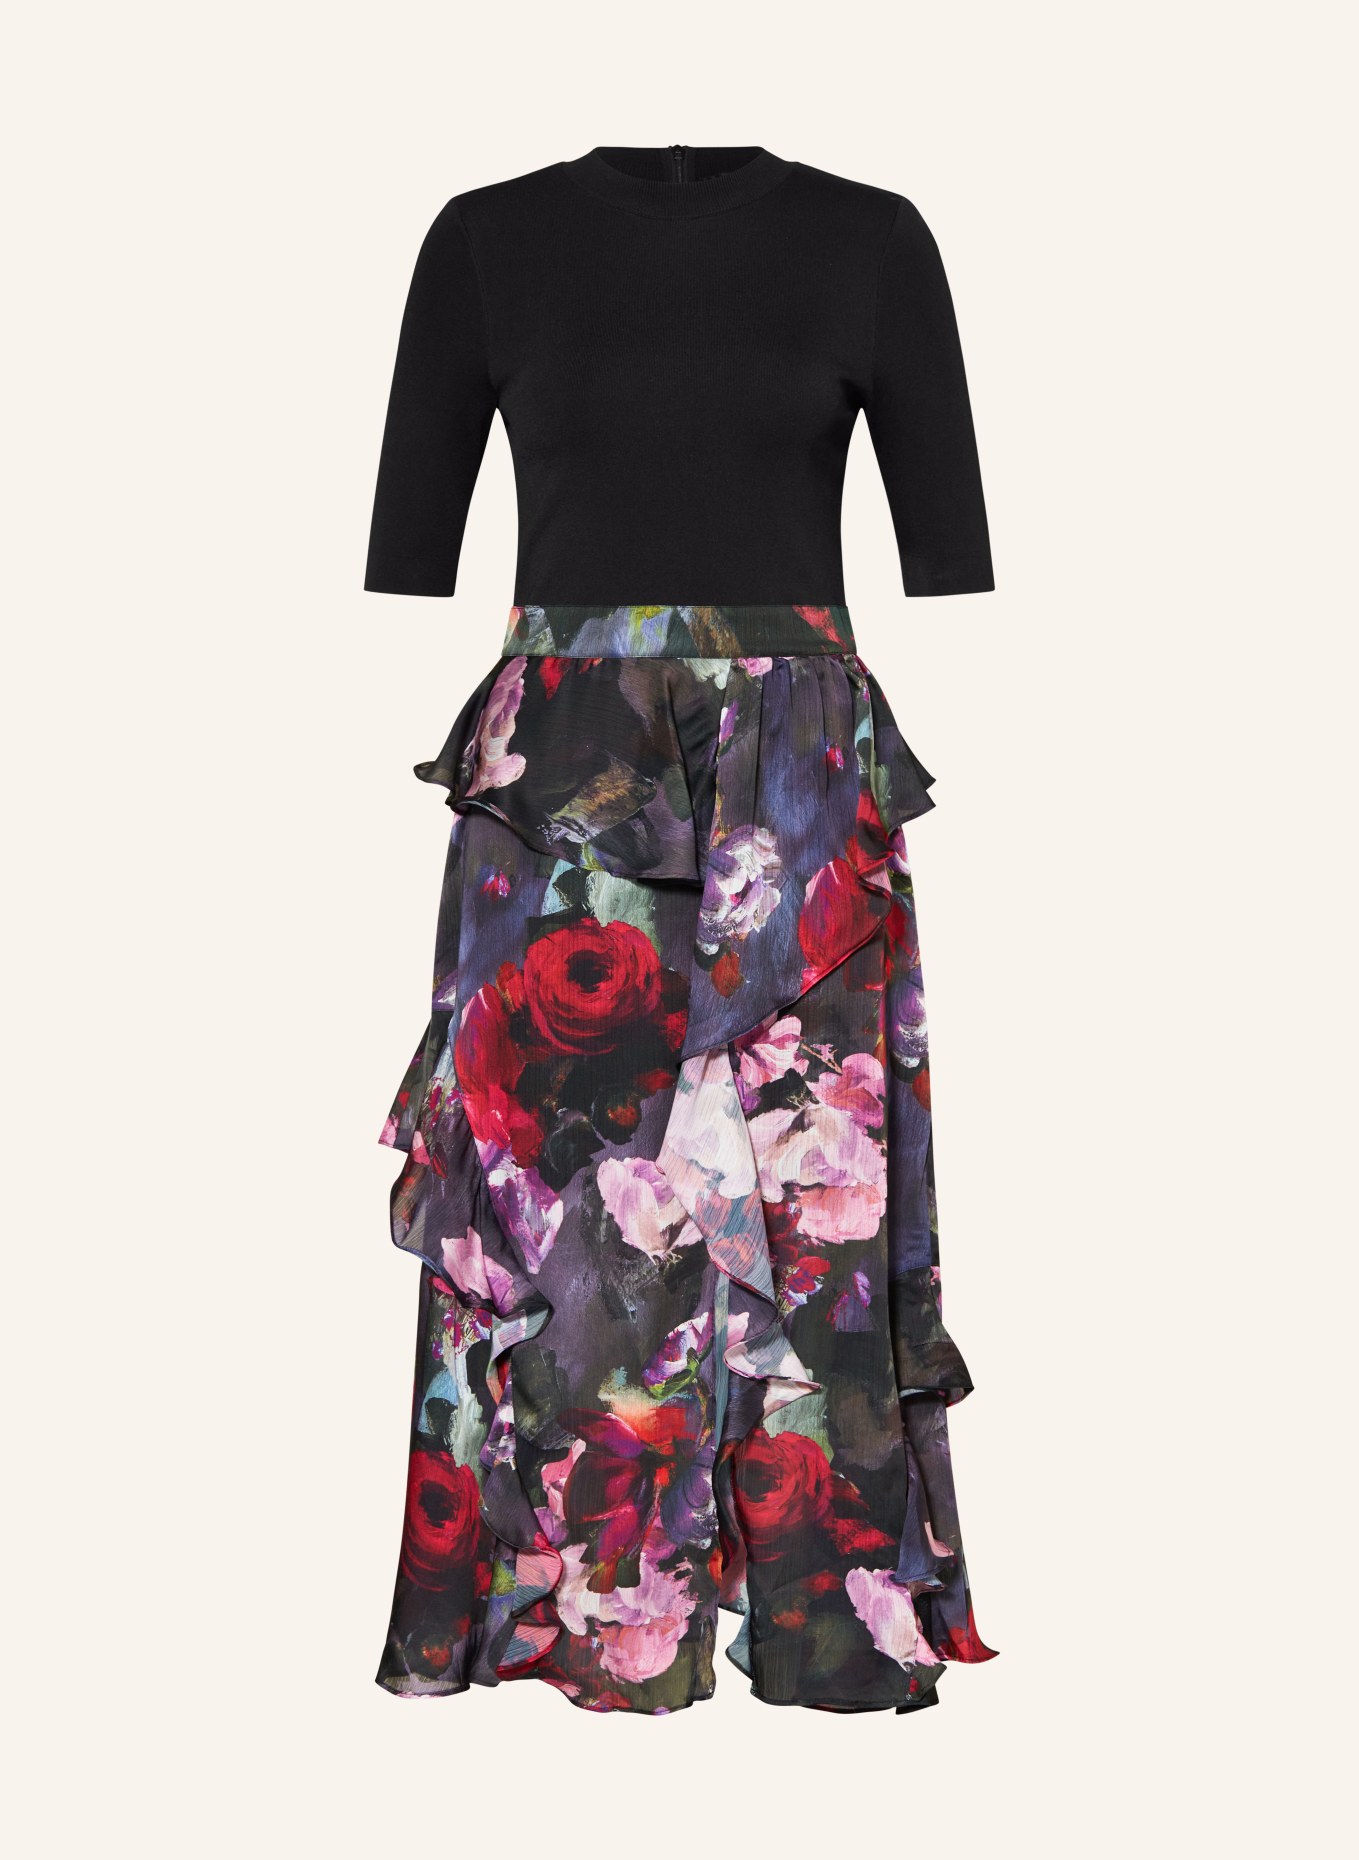 TED BAKER Kleid ROWANA im Materialmix mit Volants, Farbe: SCHWARZ/ GRÜN/ PINK (Bild 1)